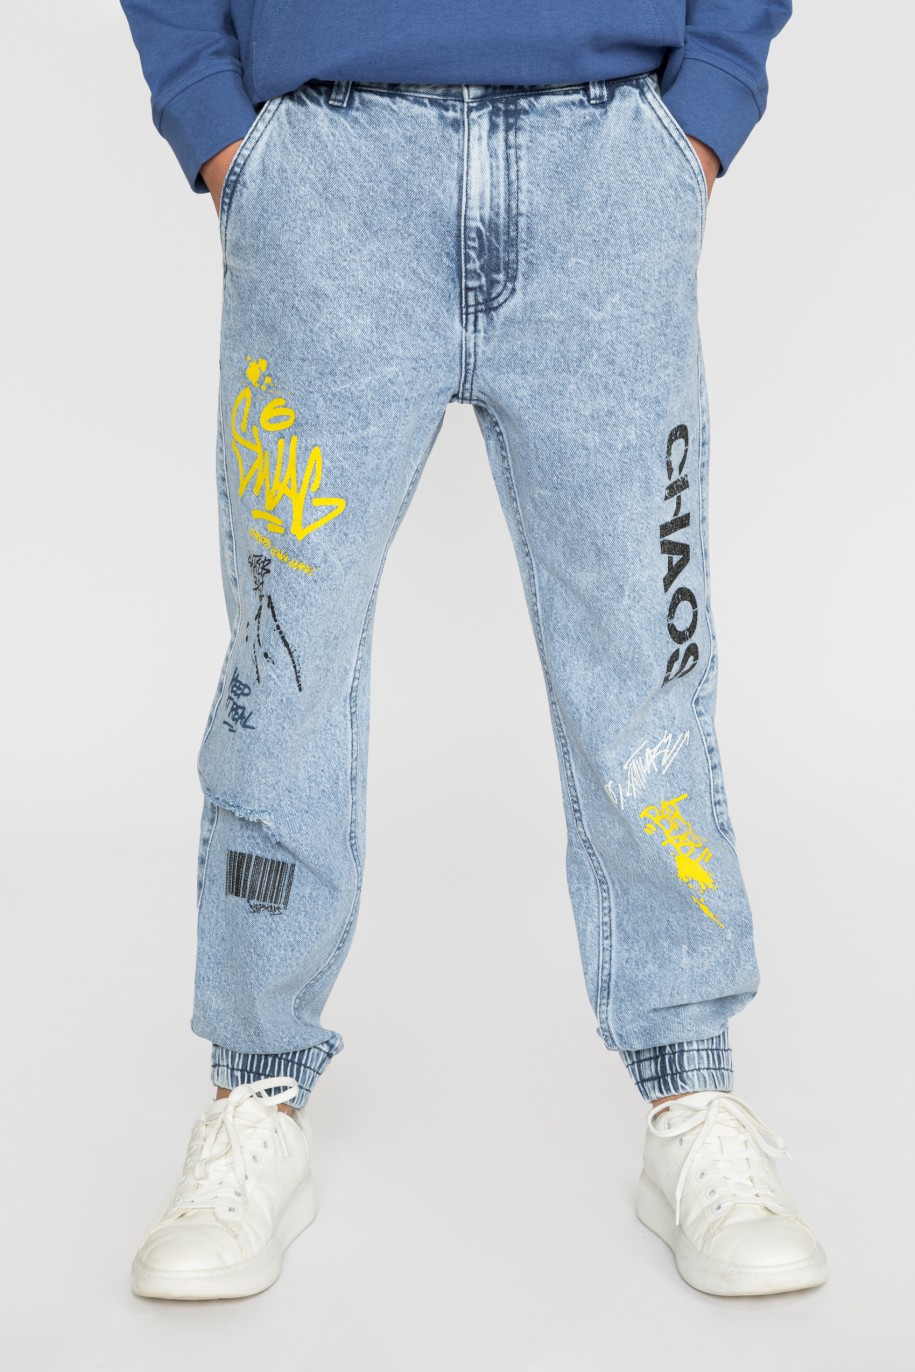 Niebieskie jeansy typu jogger z nadrukami dla chłopaka - 33456